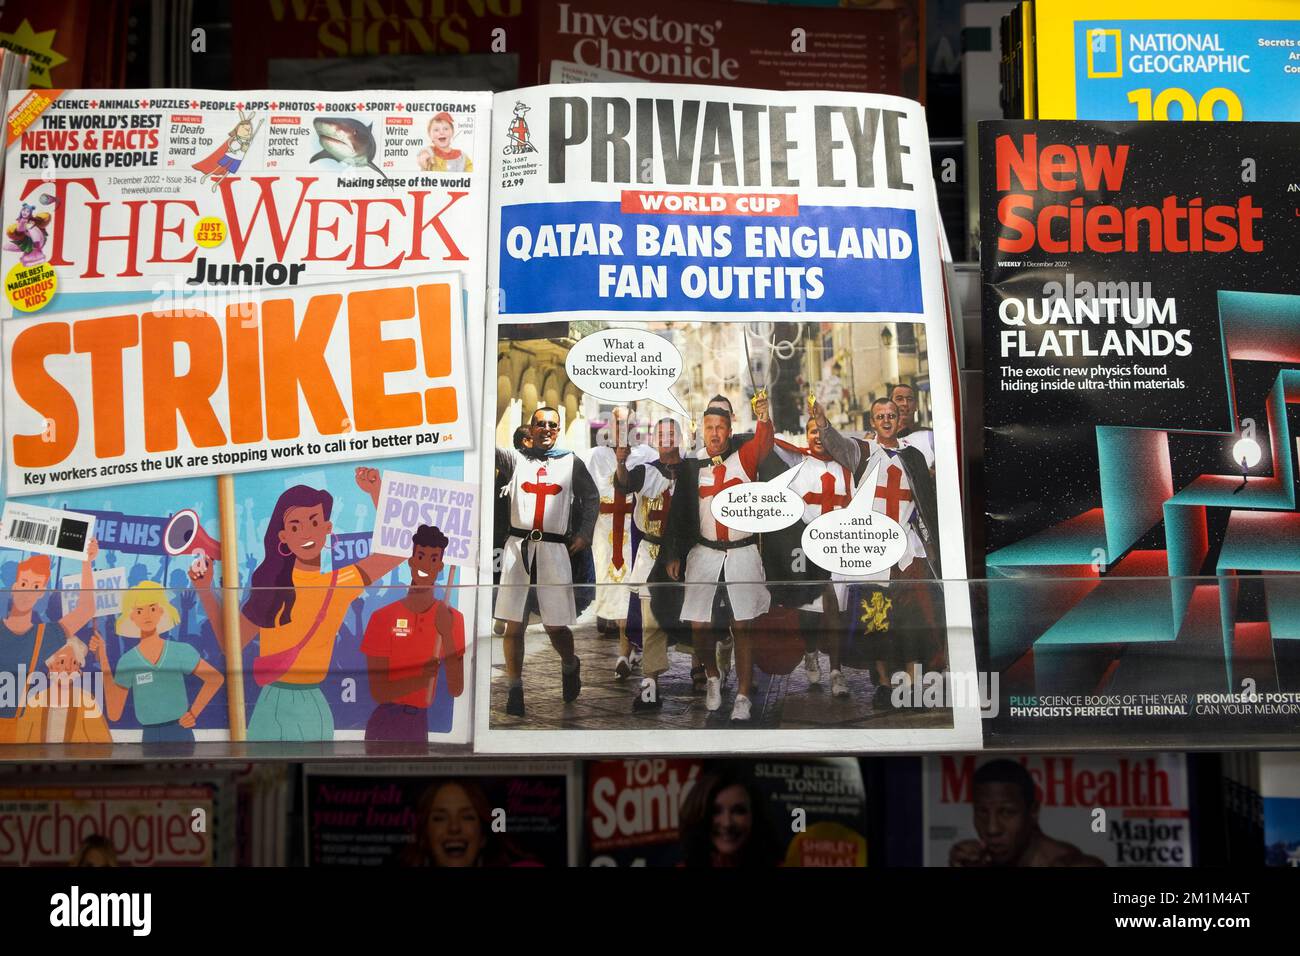 Les couvertures avant week Junior « Strike » et la tablette du magazine Private Eye « Qatar bans England Fan Thabs » Banque D'Images